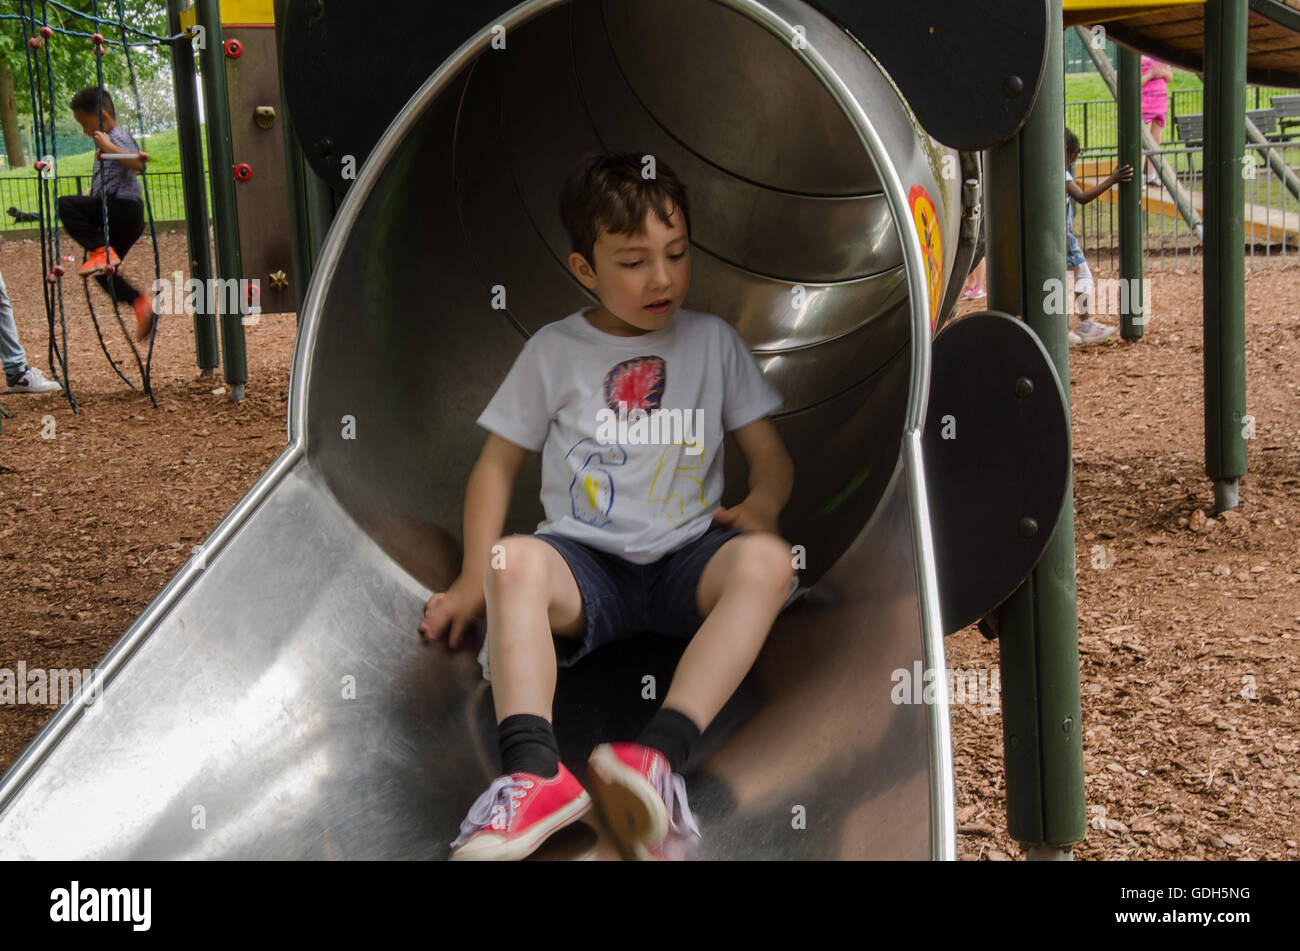 Un jeune garçon apparaît au bas de la diapositive dans une aire de jeux pour enfants dans la région de Prospect Park, lecture. Banque D'Images